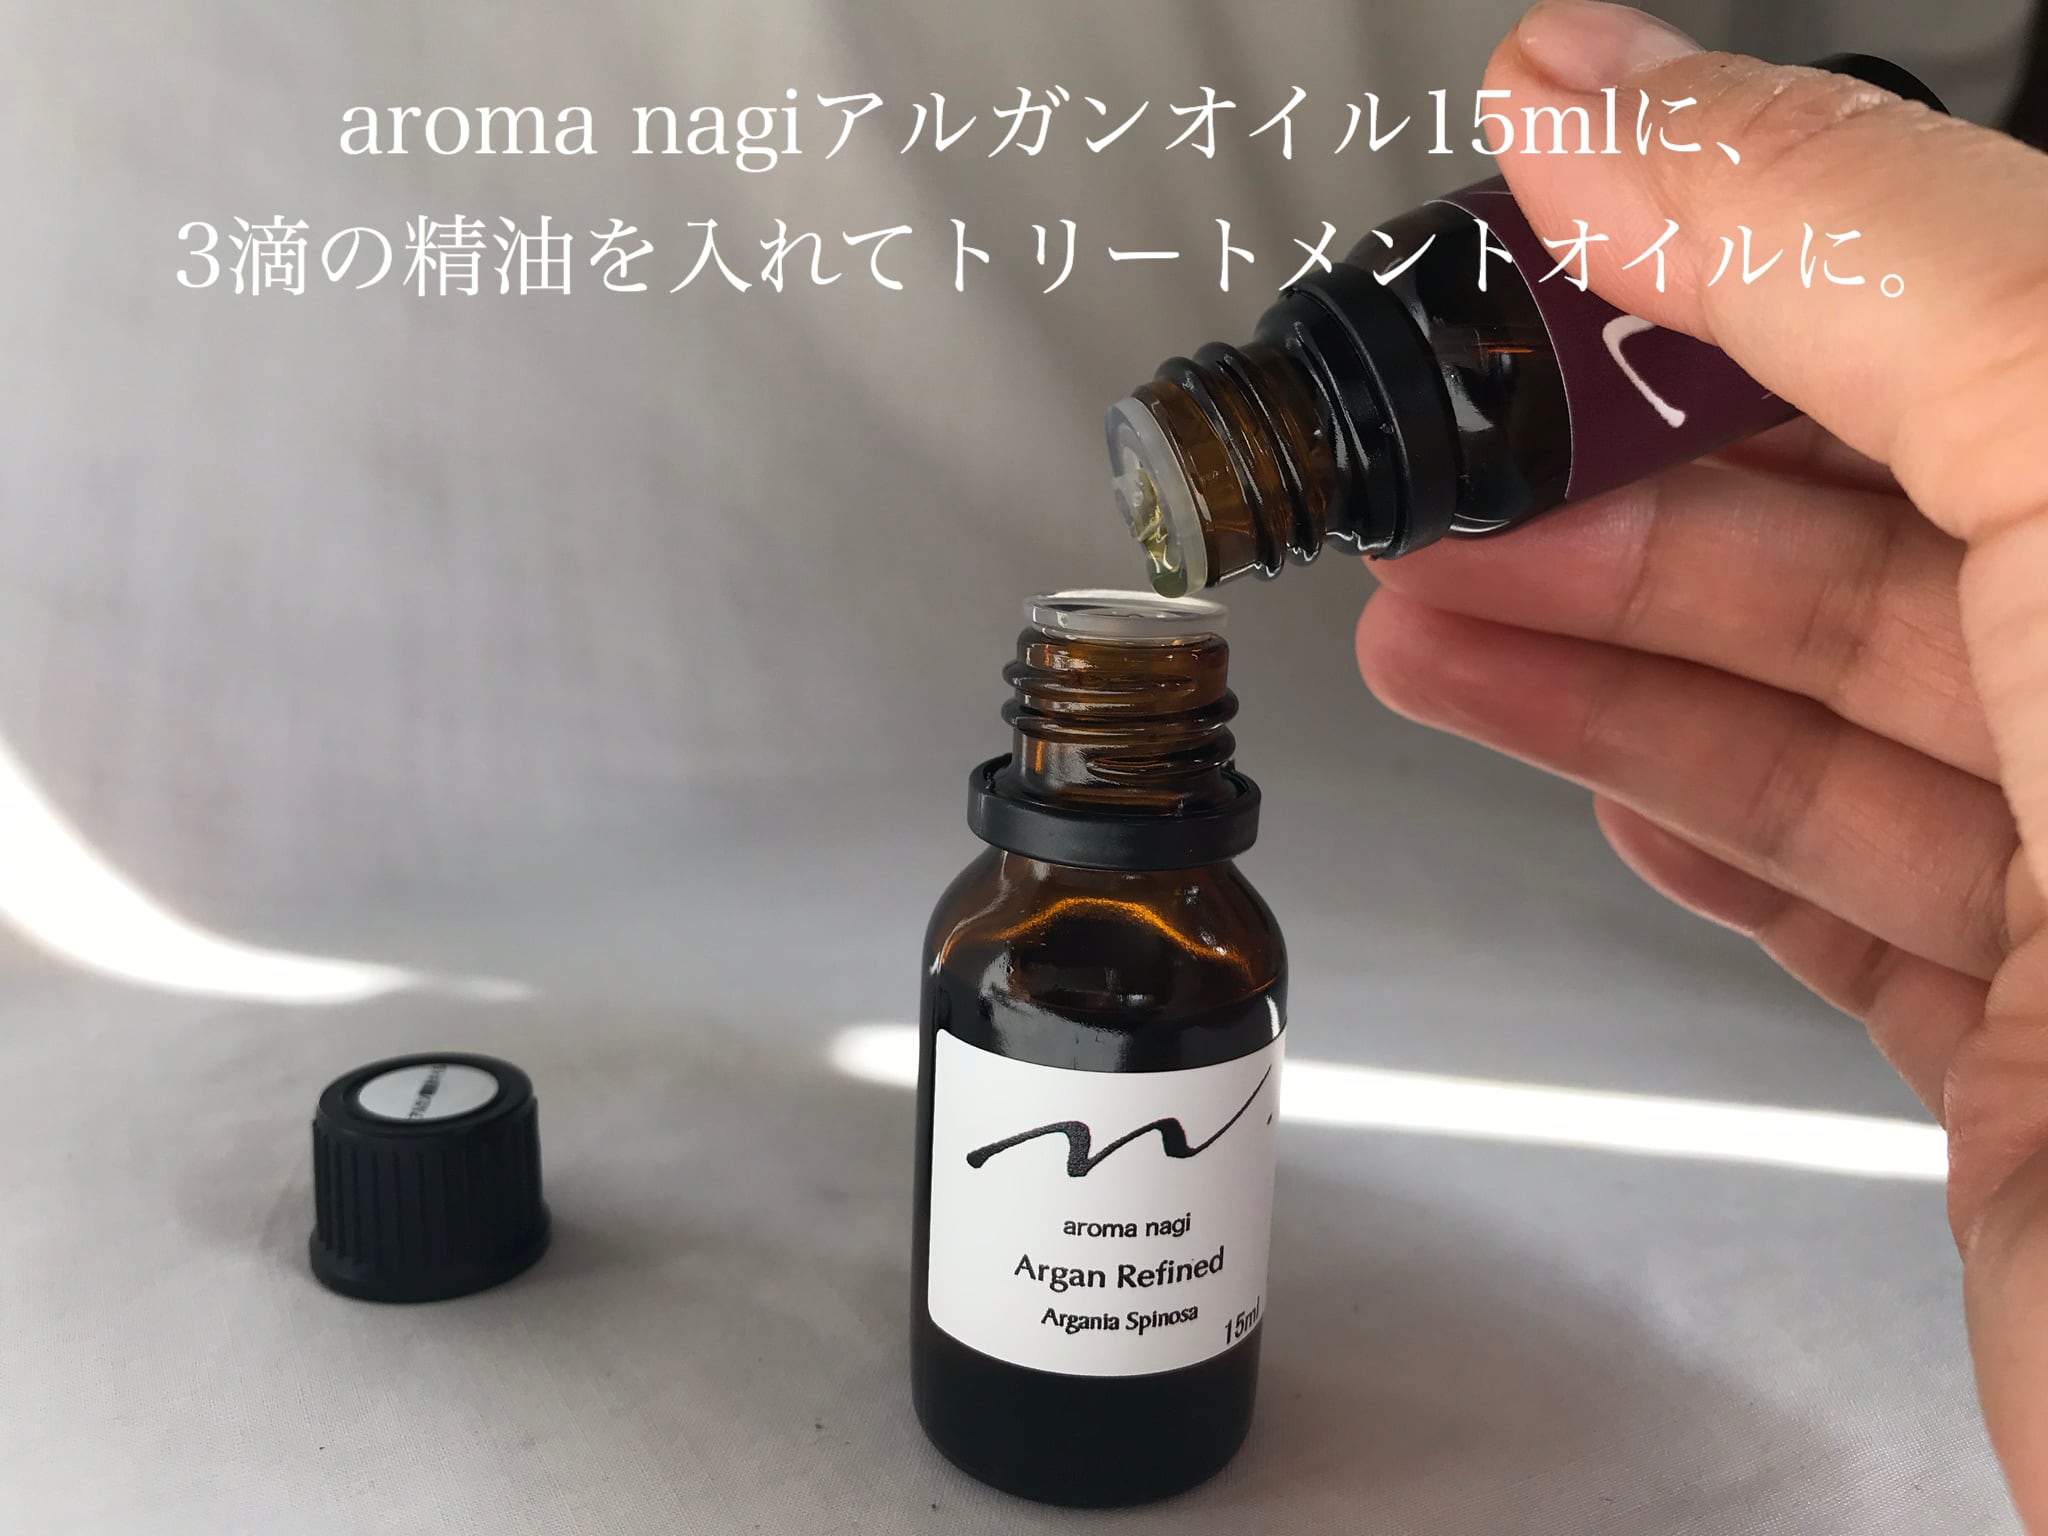 aroma nagiの精油について。使い方について。※商品ではございません。